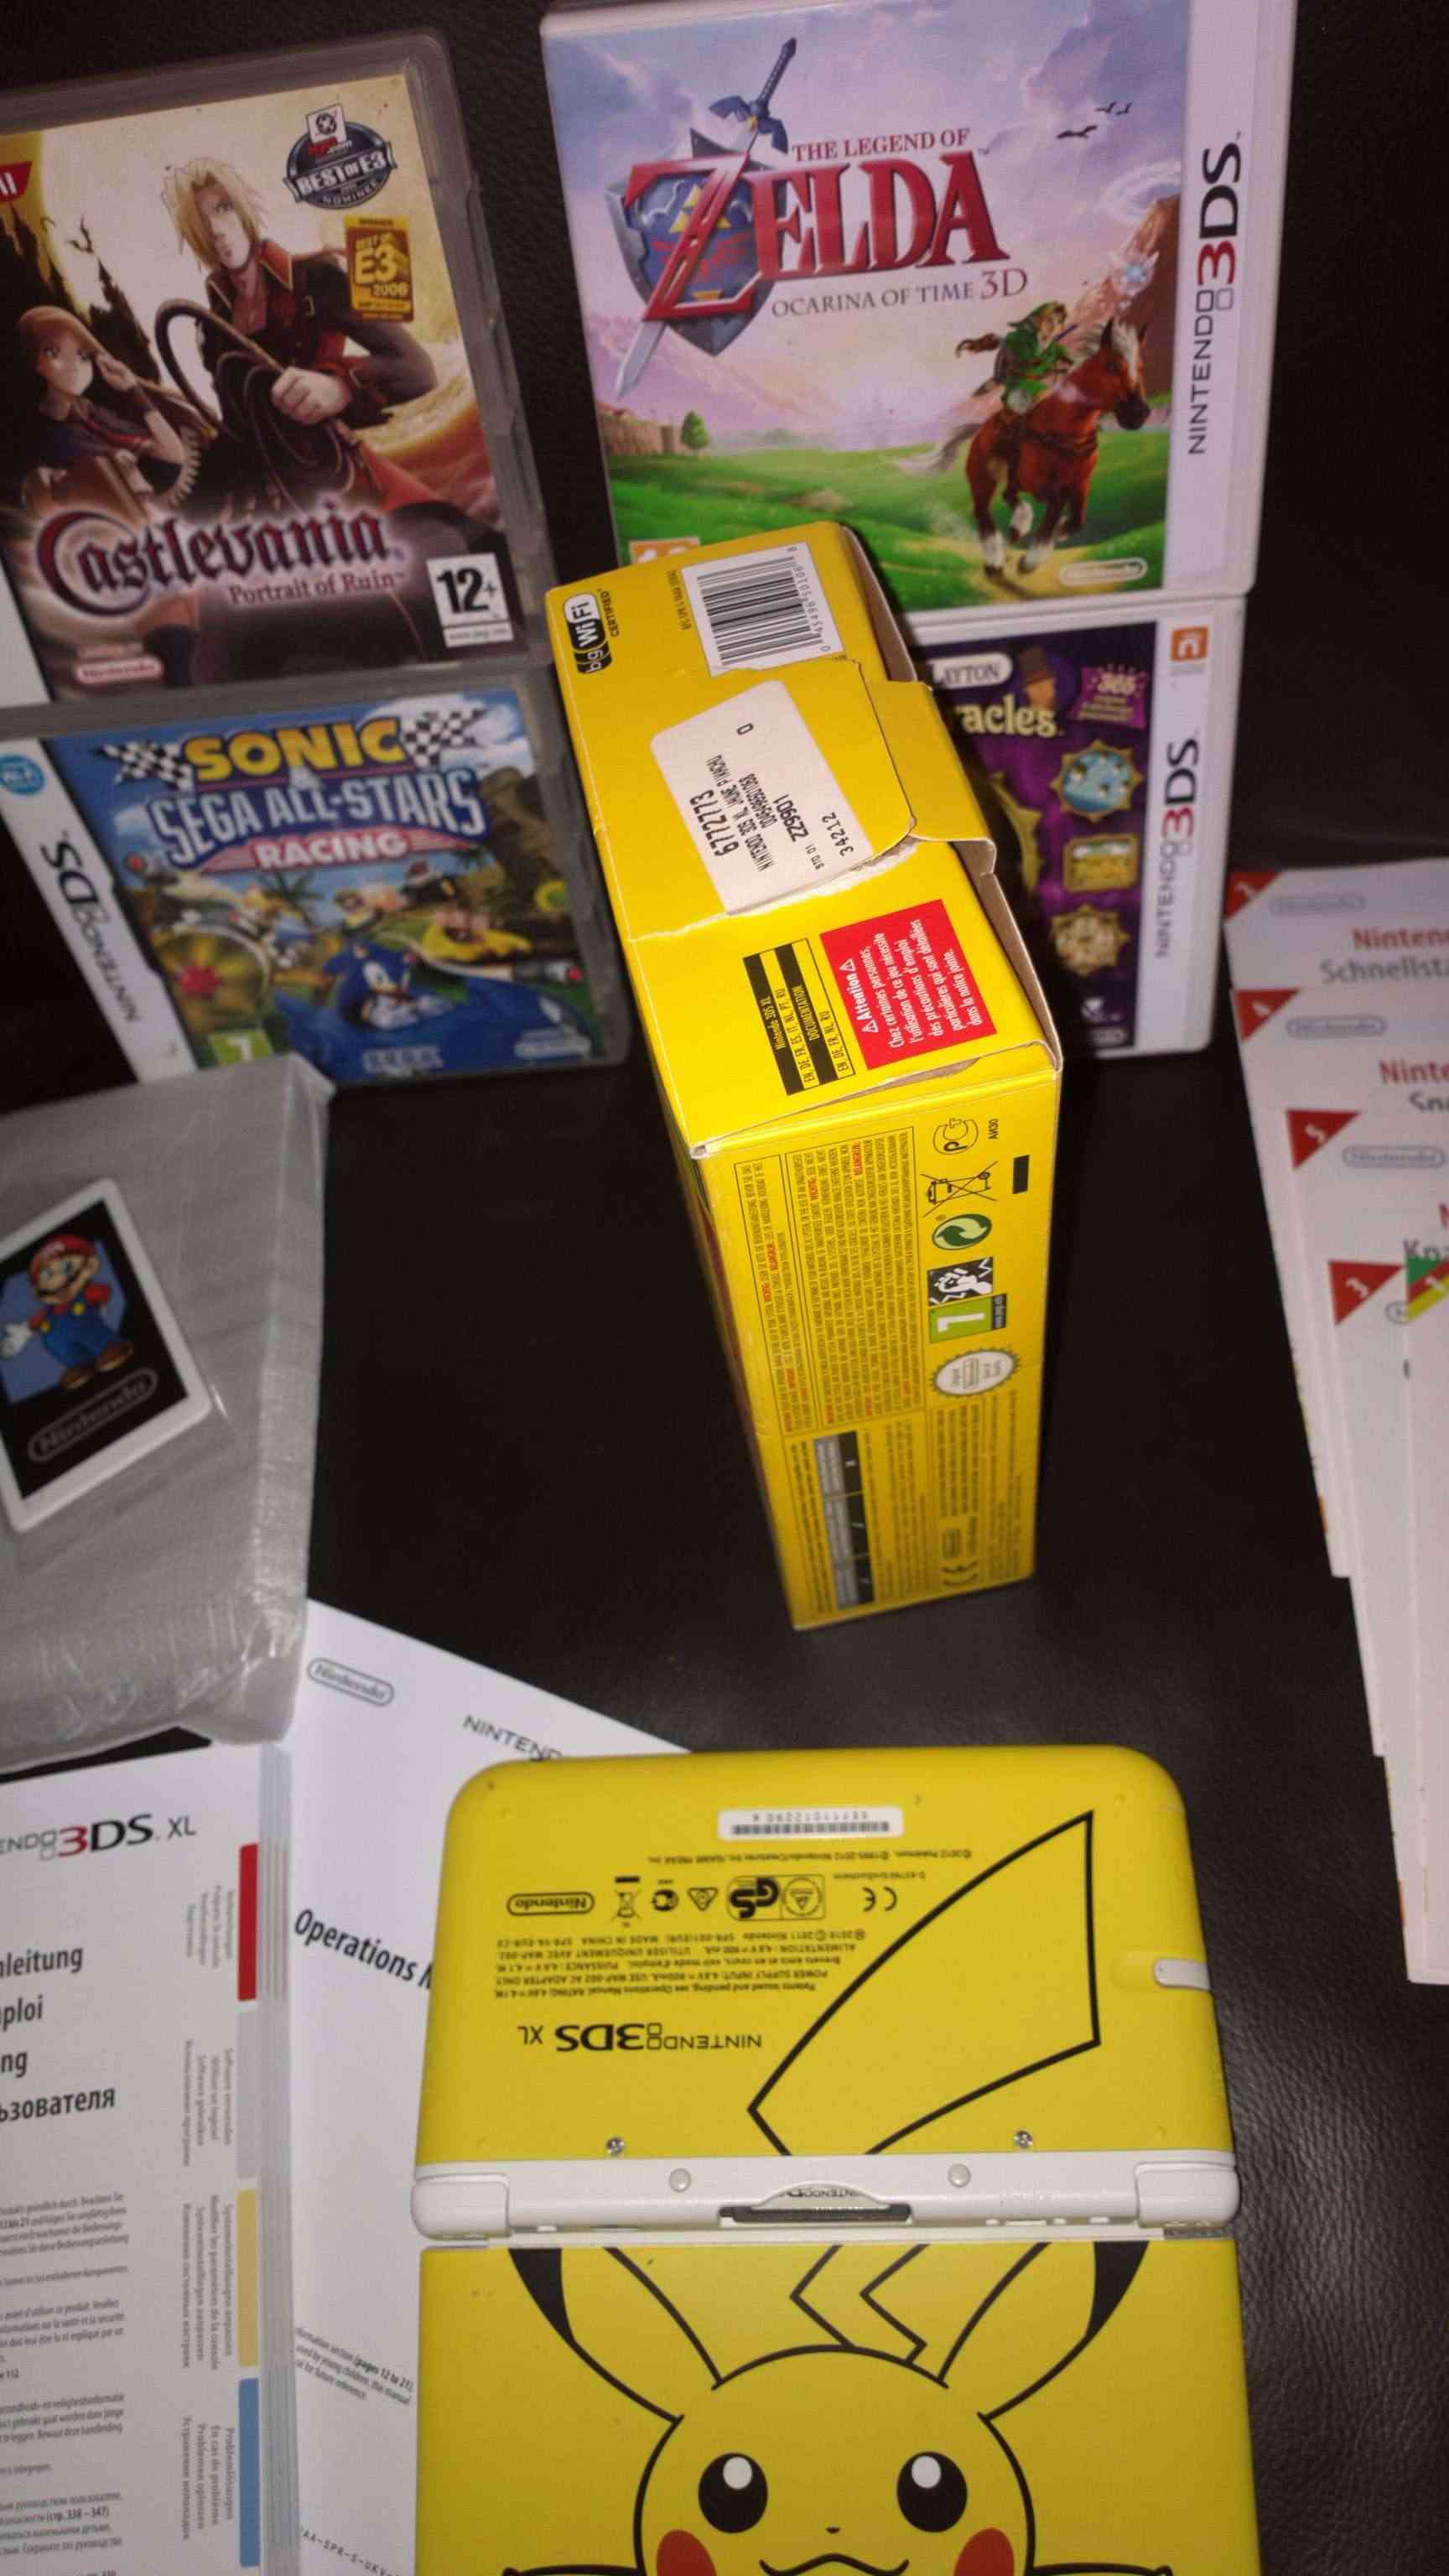 Vends 3DS XL Pikachu édition limitée 270€ état neuf 312